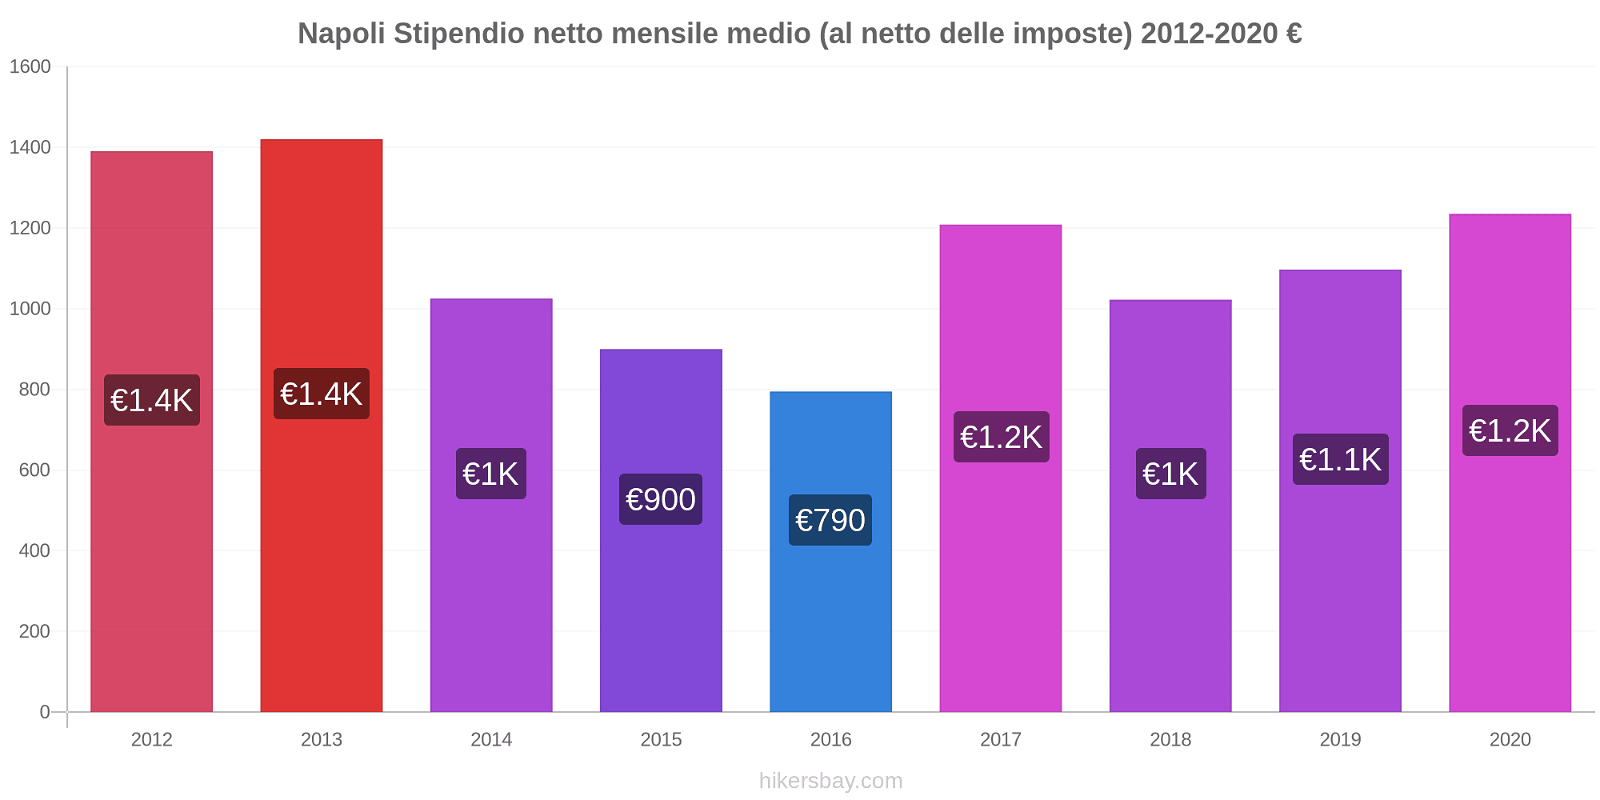 Napoli variazioni di prezzo Salario medio mensile netto (al netto delle imposte) hikersbay.com